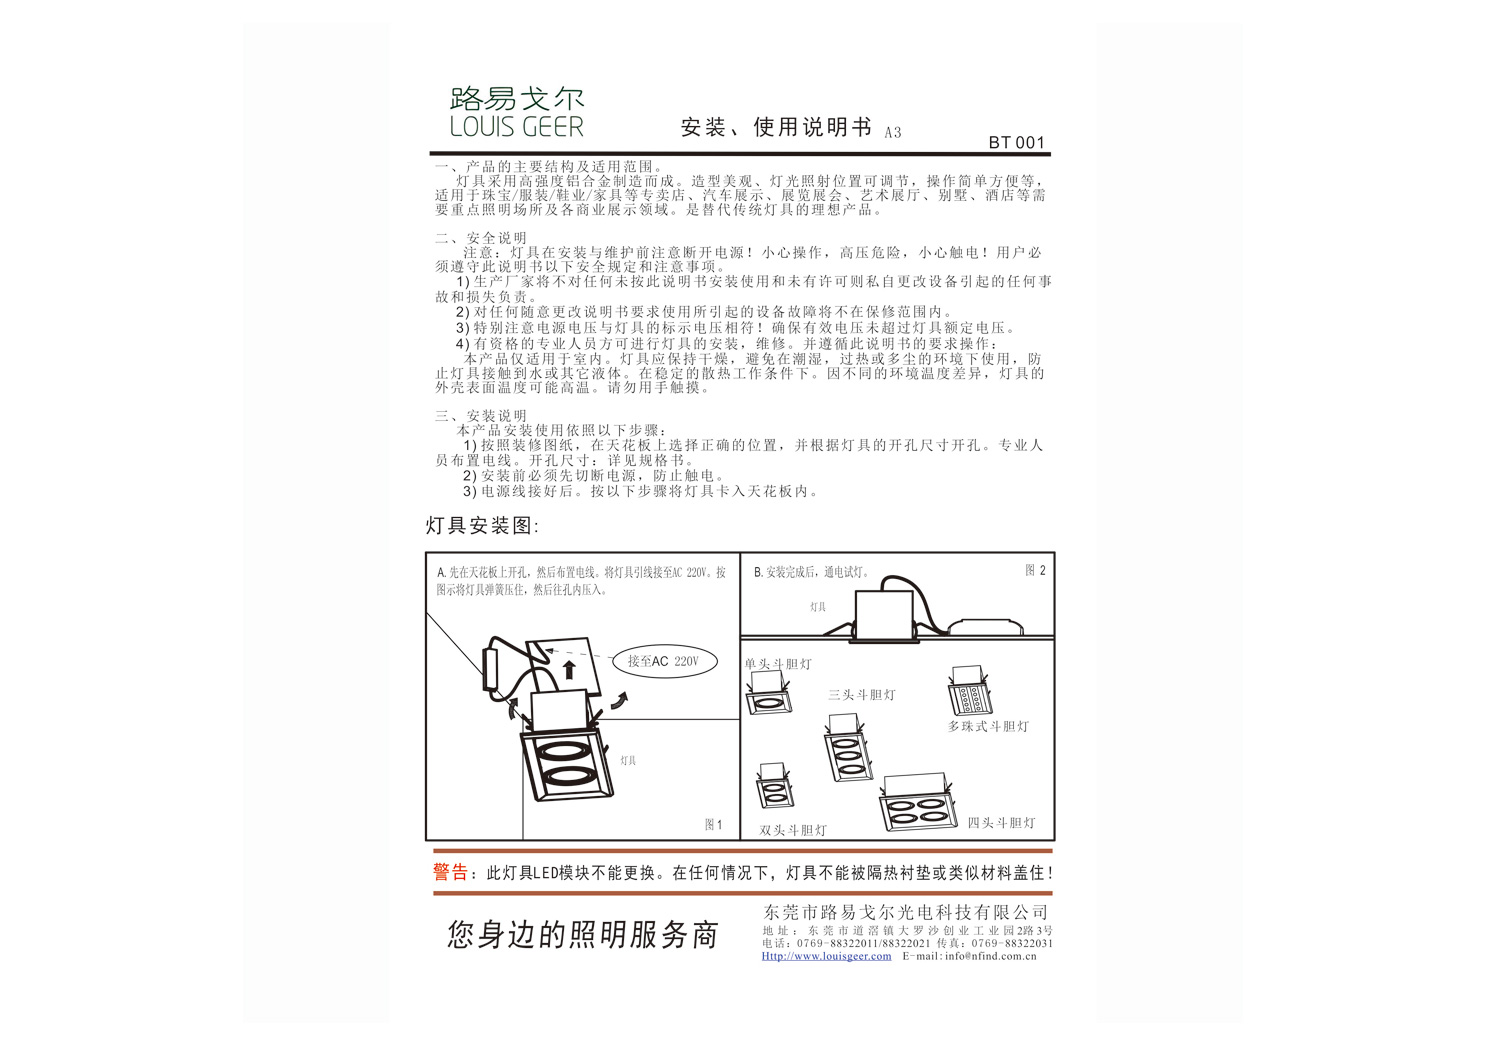 BT001 豆胆射灯通用安装说明书-中文.jpg